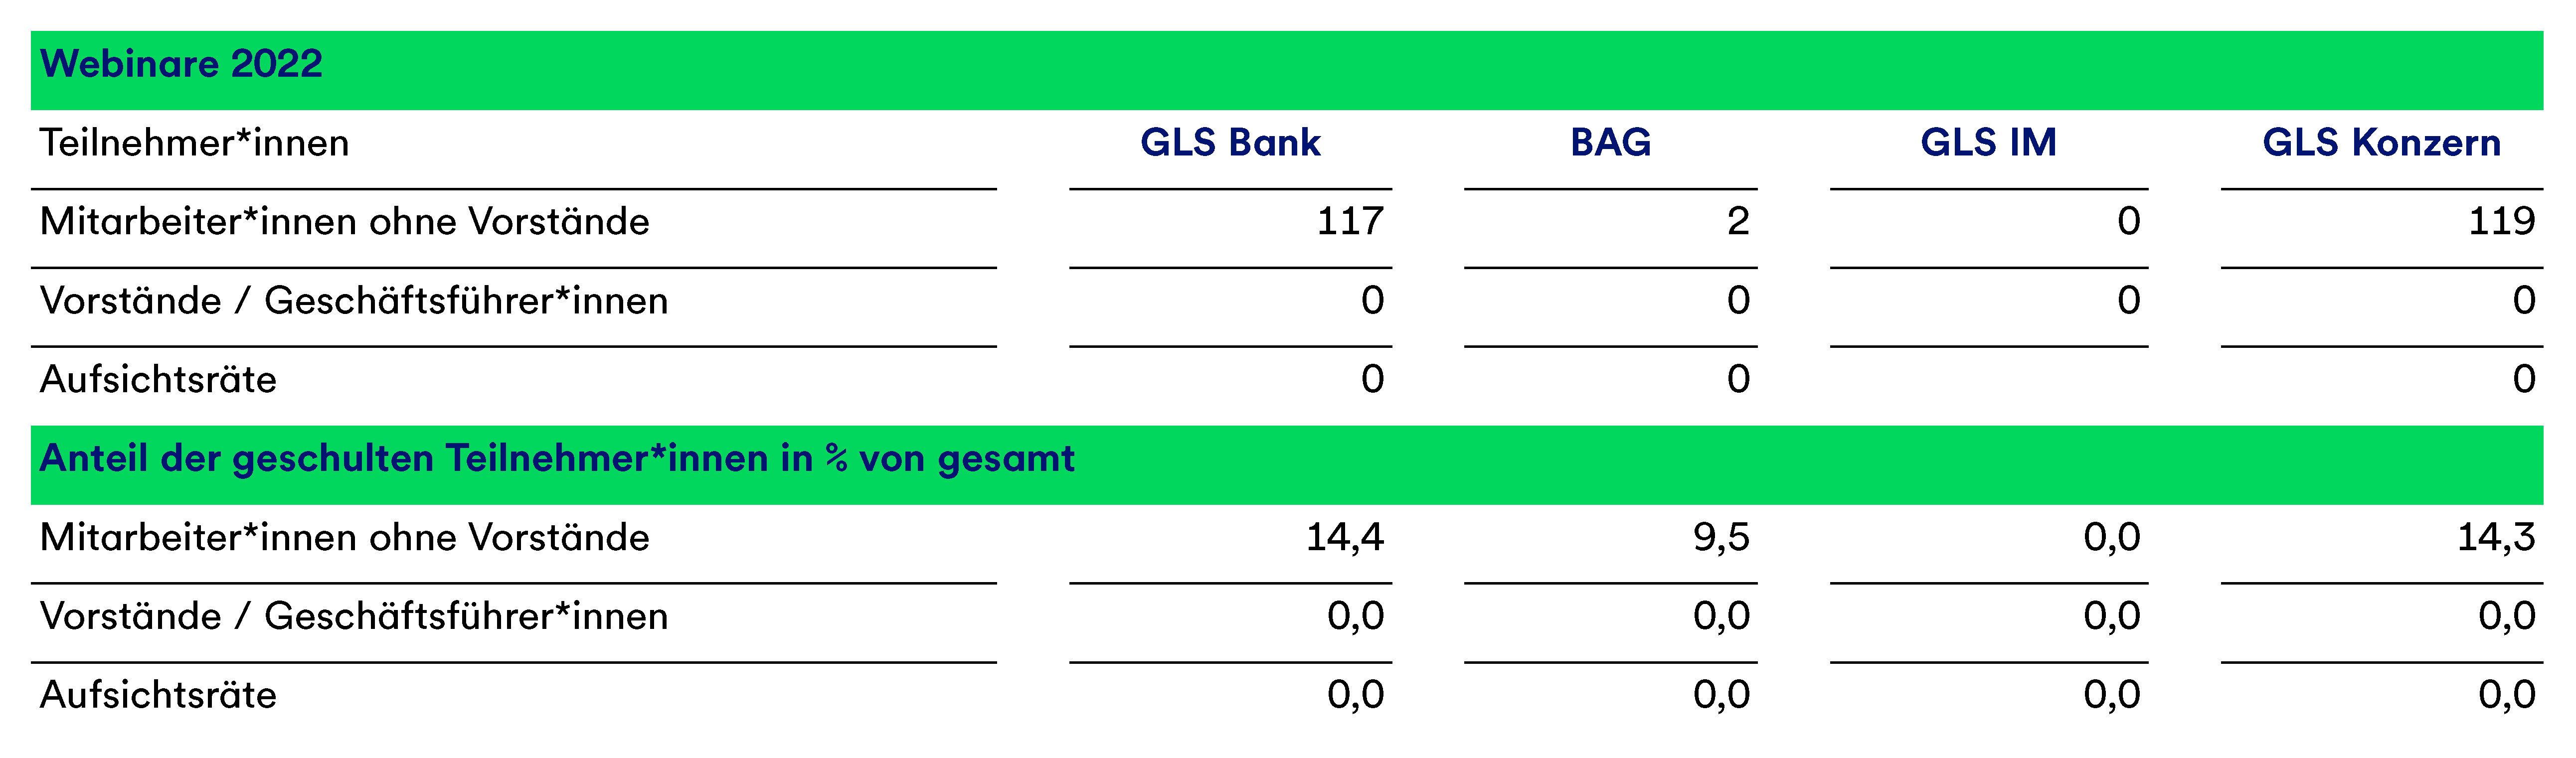 Eine Tabelle, die die Webinare der GLS Bank in 2022 und den Antei lder geschulten Teilnehmenden in % von gesamt aufschlüsselt.